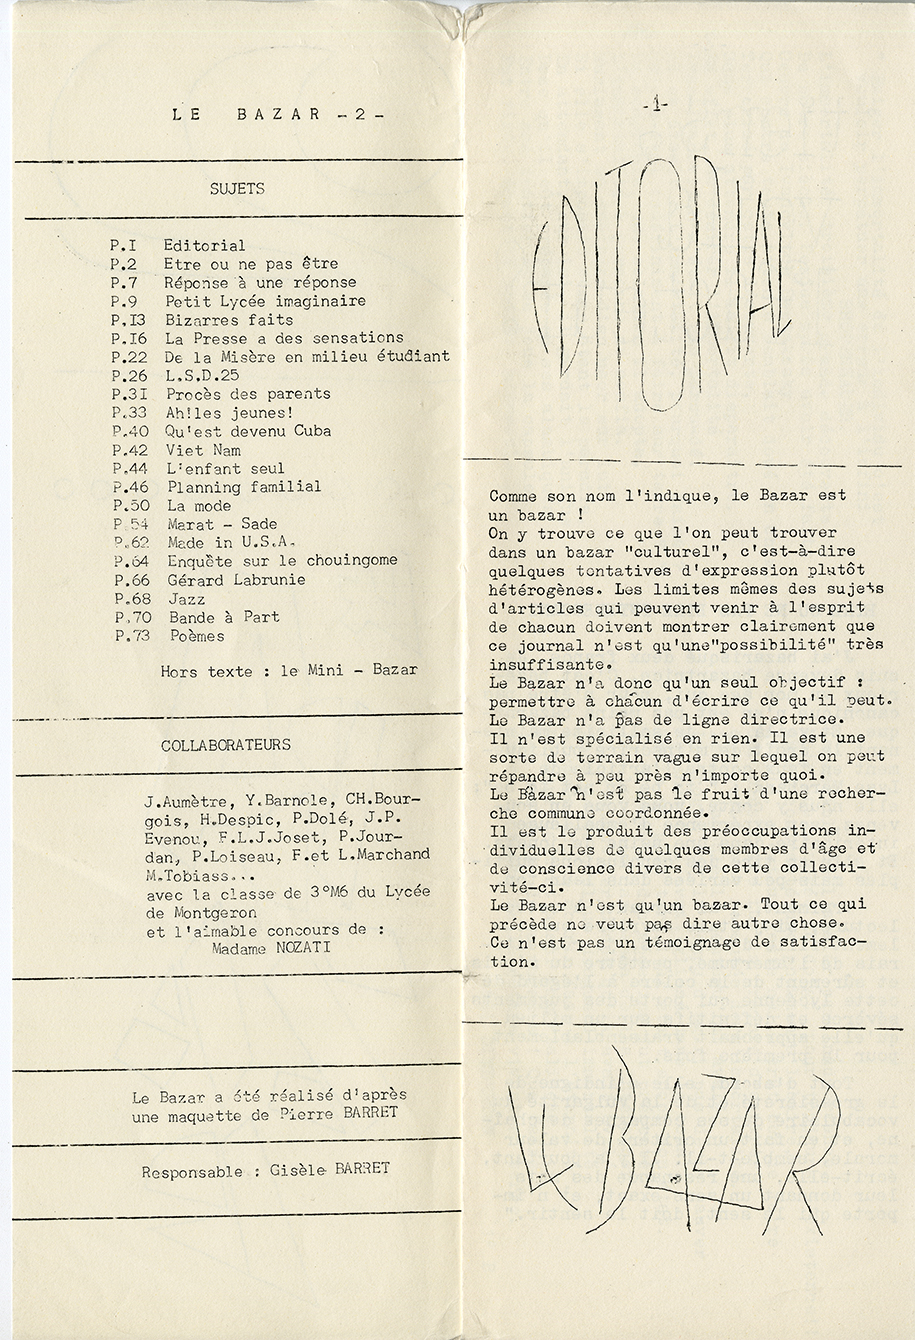 Le Bazar vol. 2. Table des matières. [entre 1964 et 1966]. Archives UdeM, P0419-D-D0002